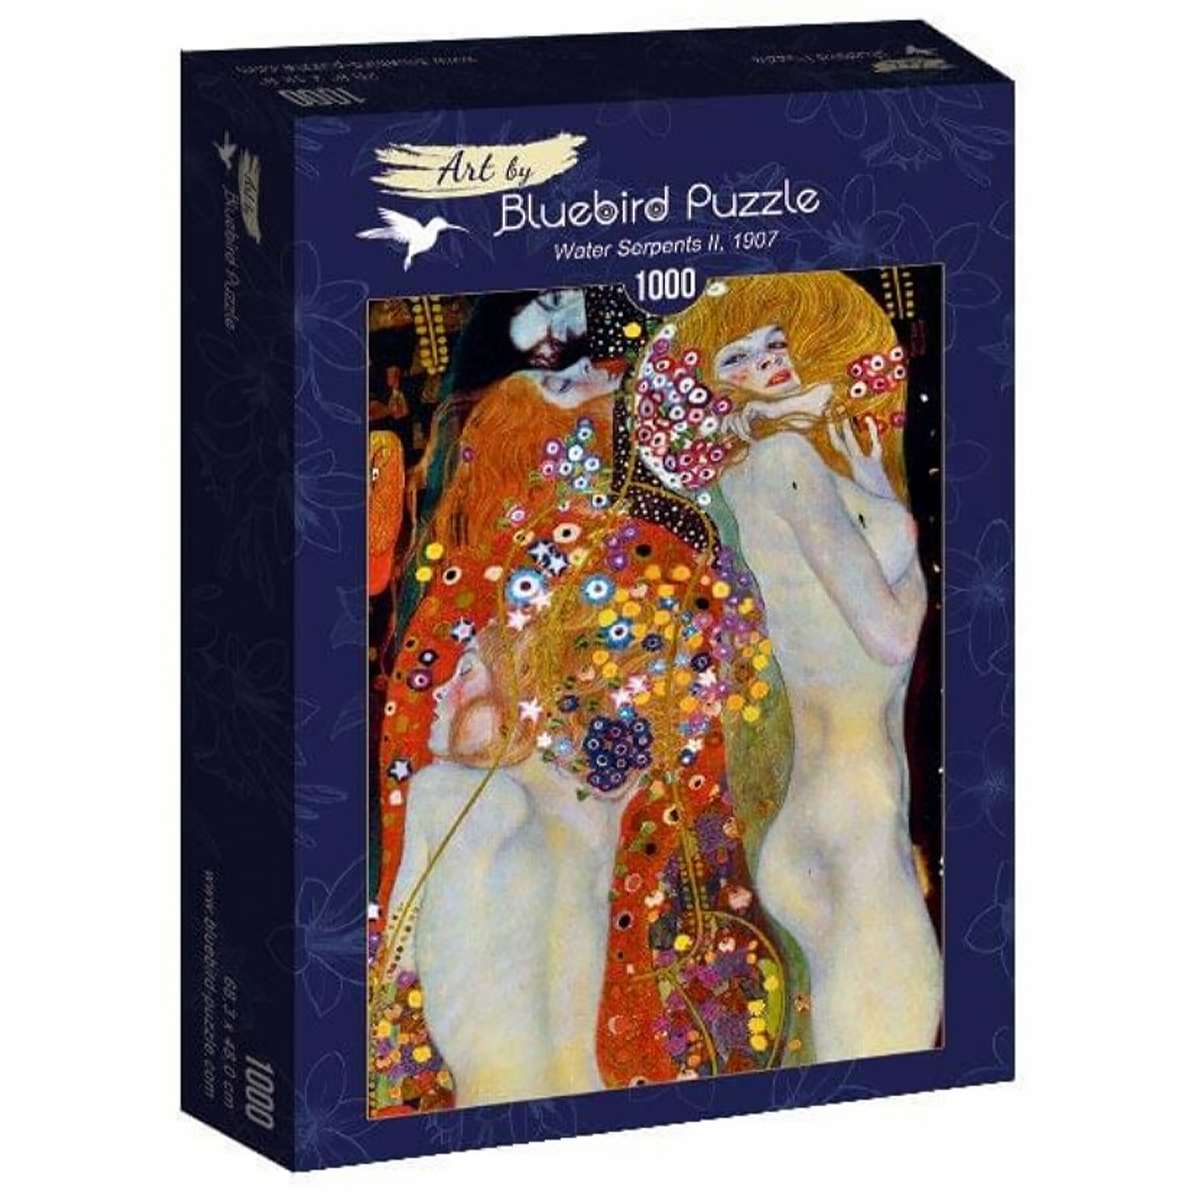 Puzzle Bluebird Serpientes de Agua de Gustav Klimt de 1000 piezas